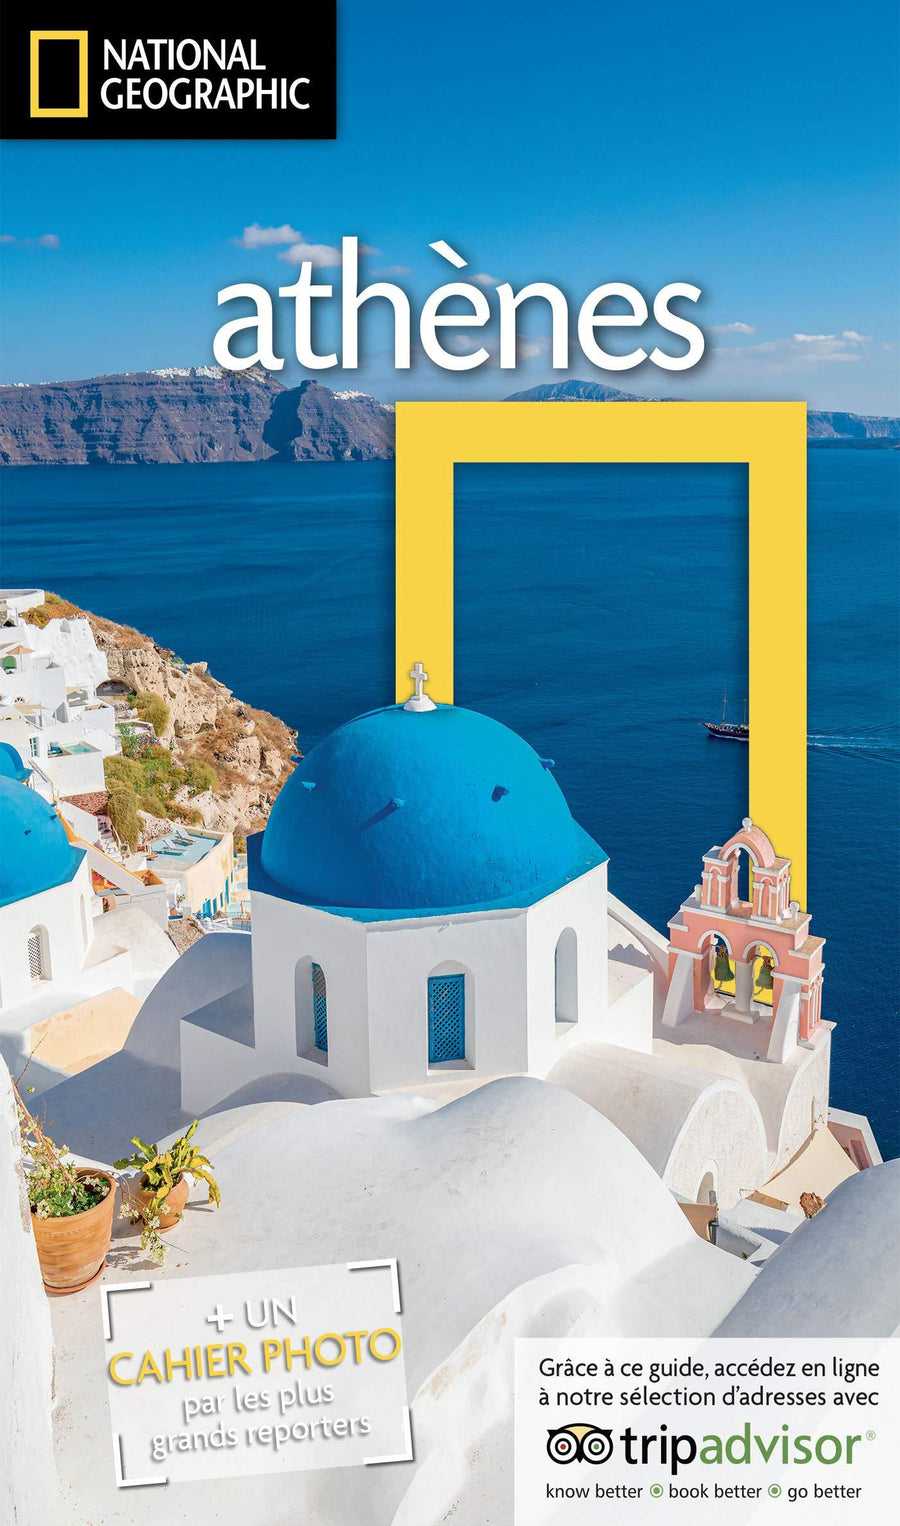 Guide de voyage - Athènes et les îles grecques - Édition 2021 | National Geographic guide de voyage National Geographic 